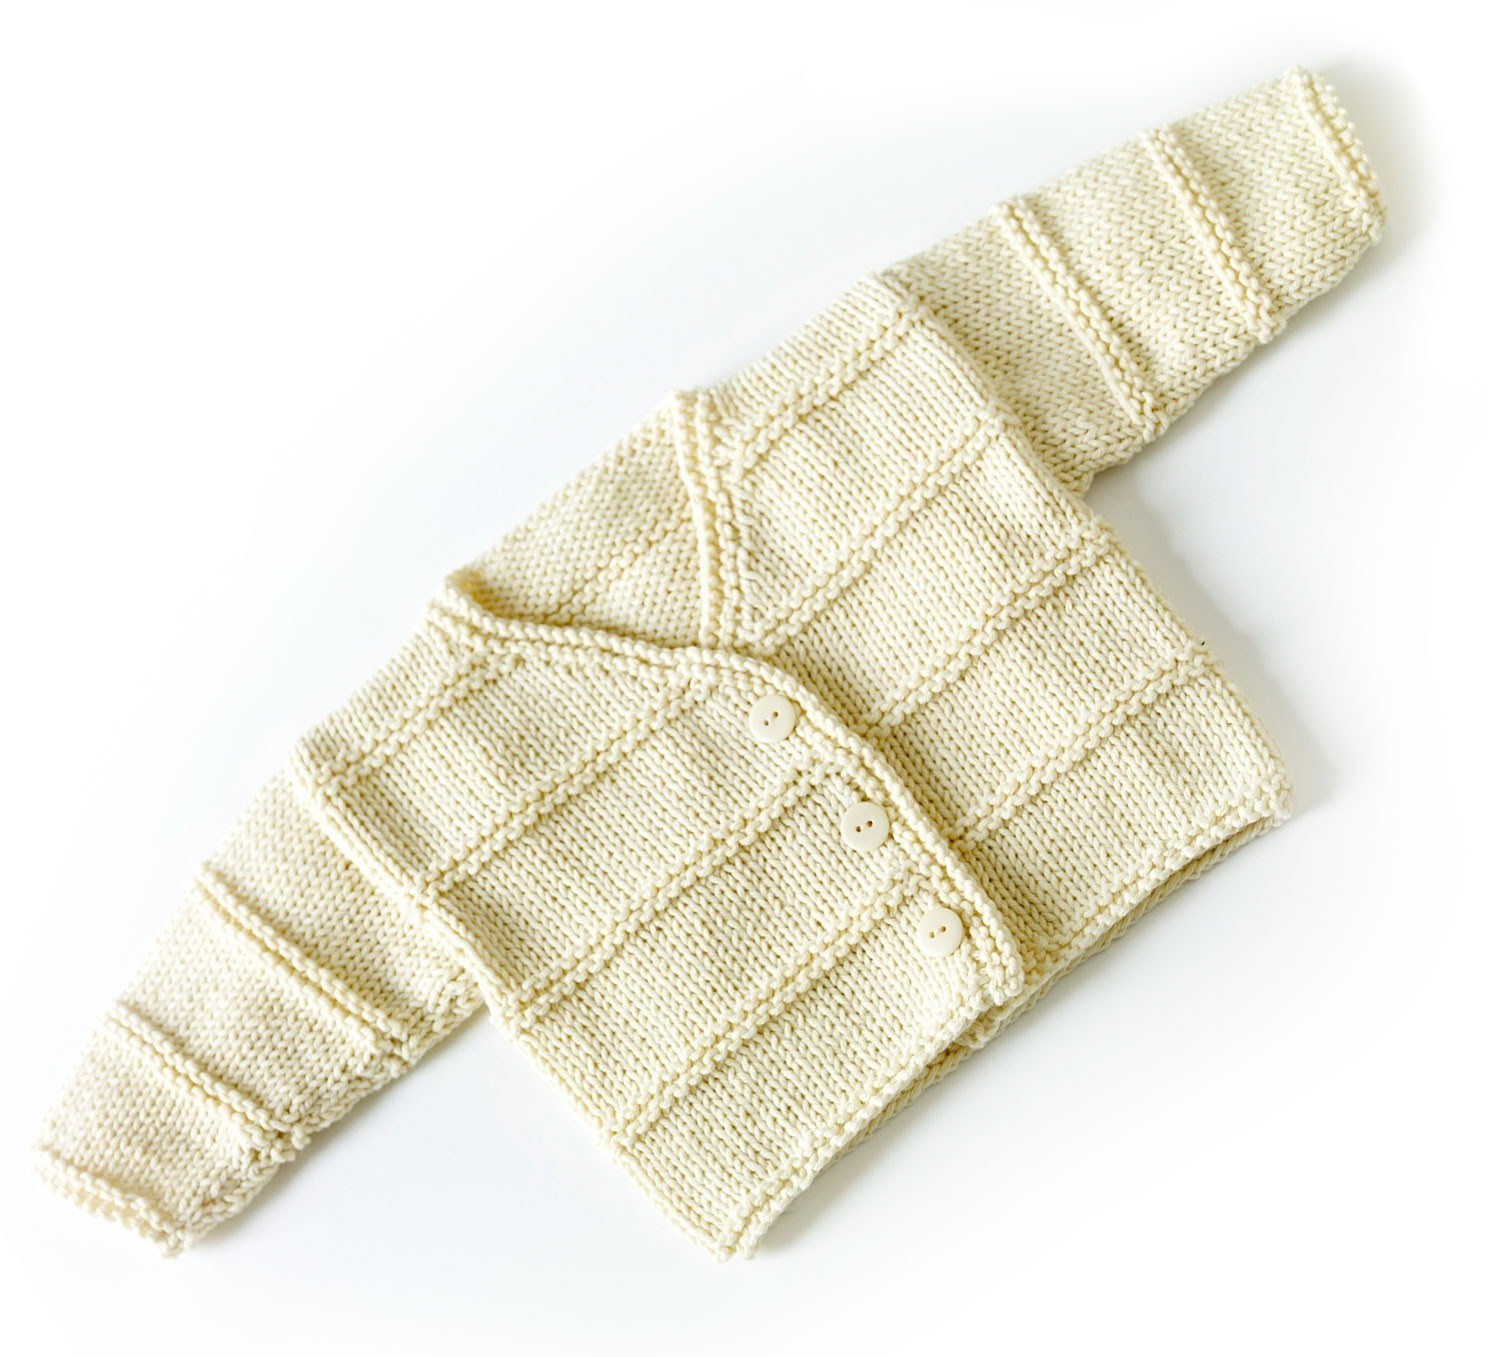 Trendy Baby Knitting Patterns Trendy Ba Knitting Patterns Free My Crochet Pinterest Blankets